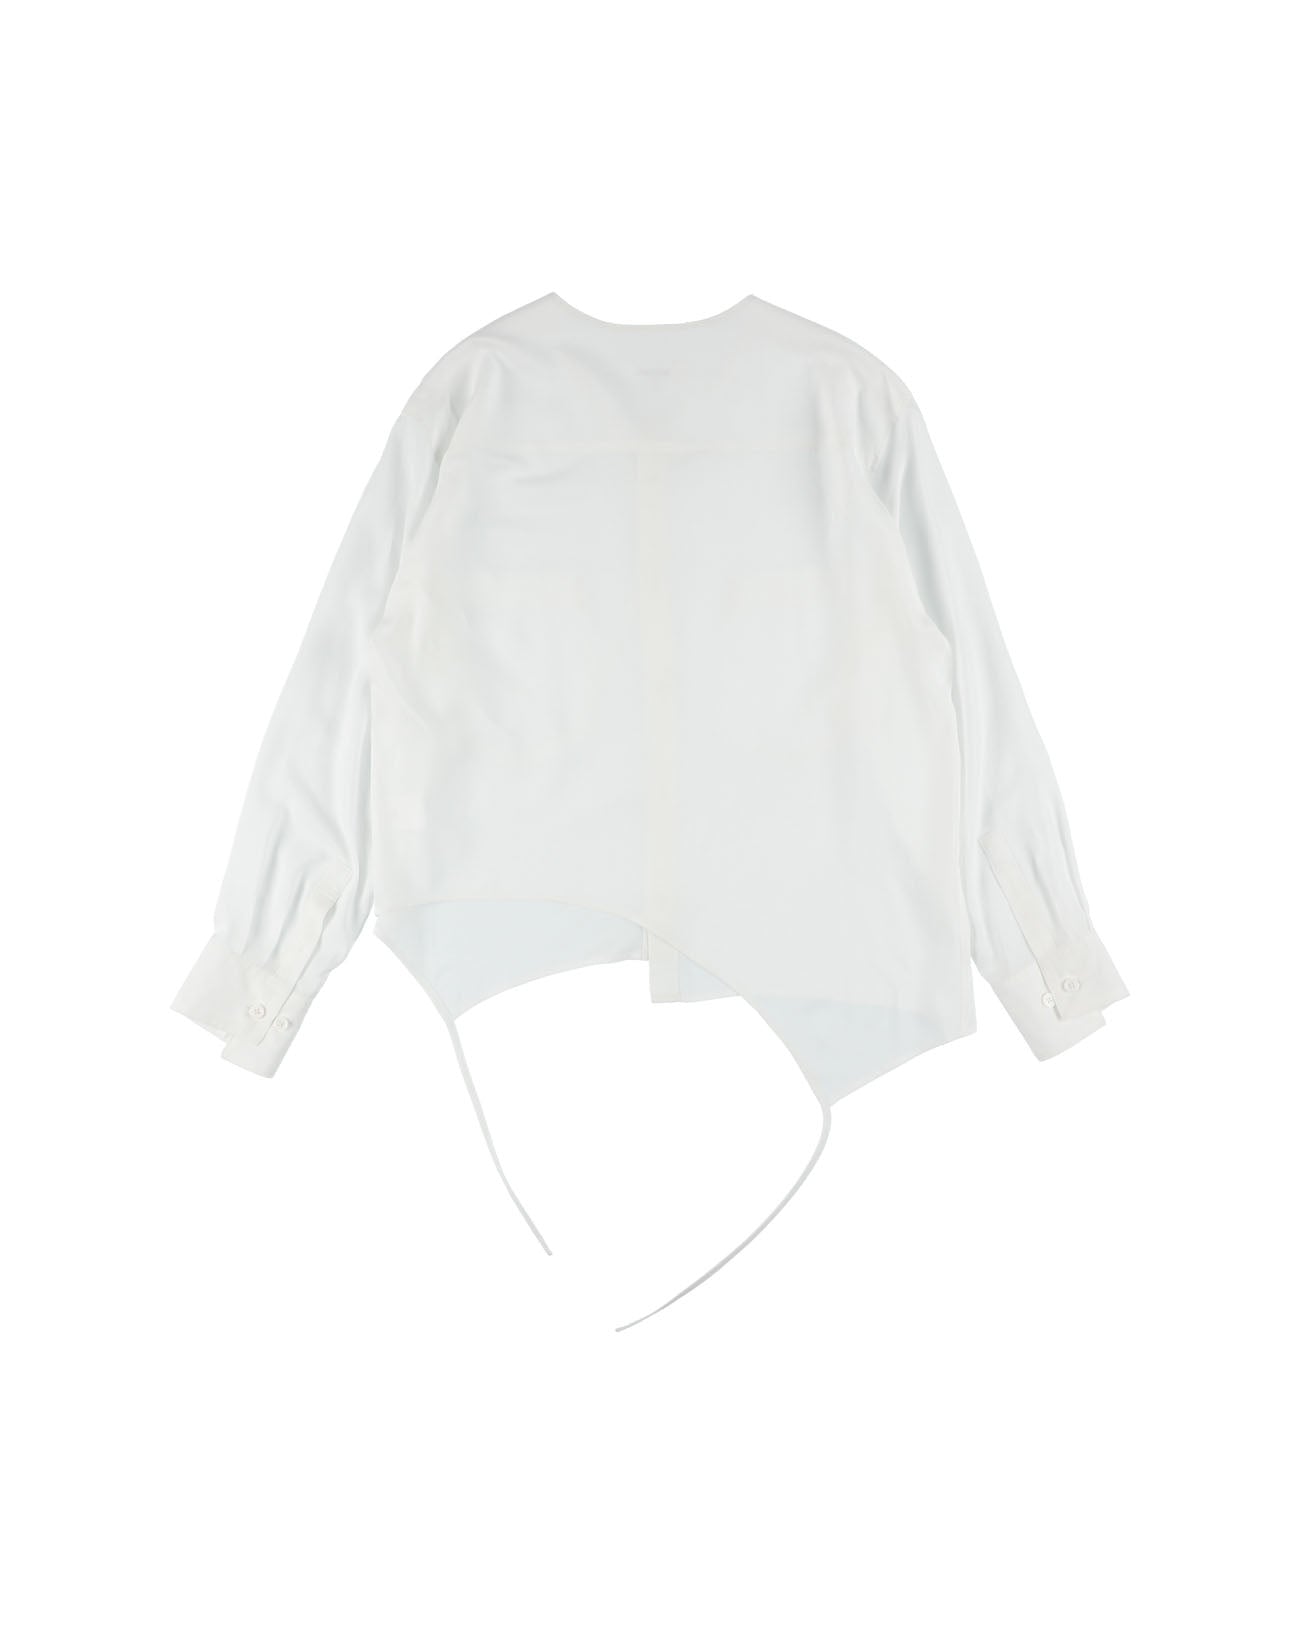 Short piping shirts - white